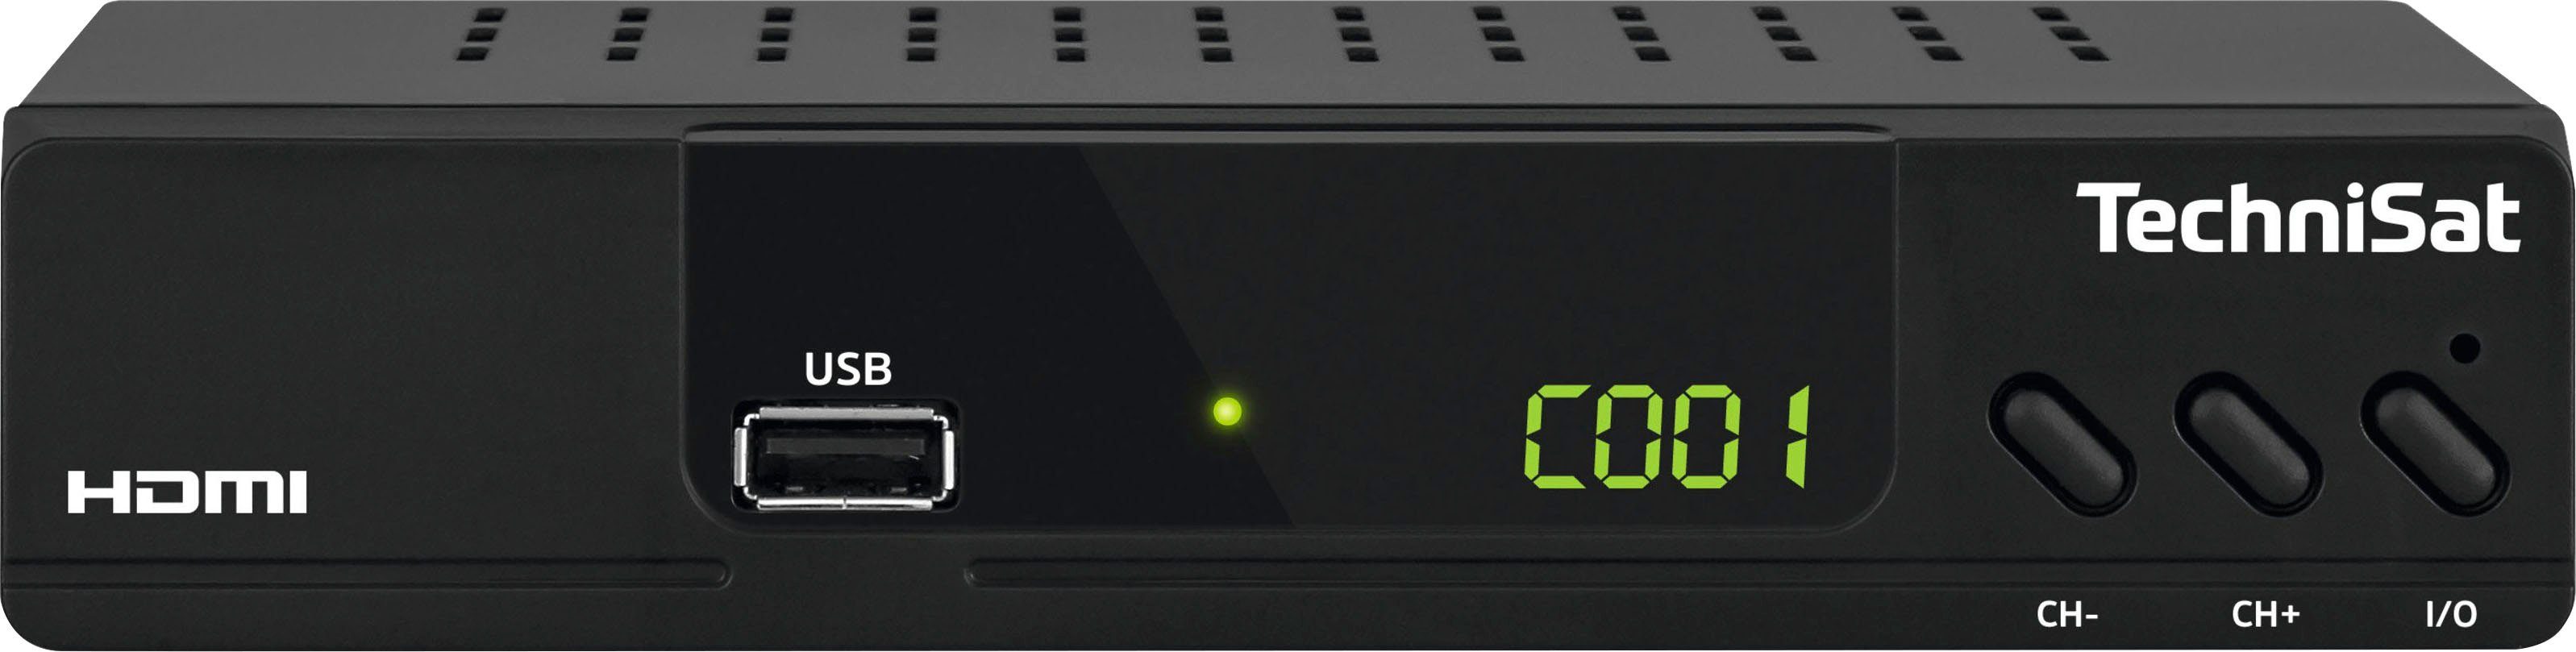 TechniSat »HD-C 232 HD-« Kabel-Receiver (mit HDMI, USB Mediaplayer) online  kaufen | OTTO